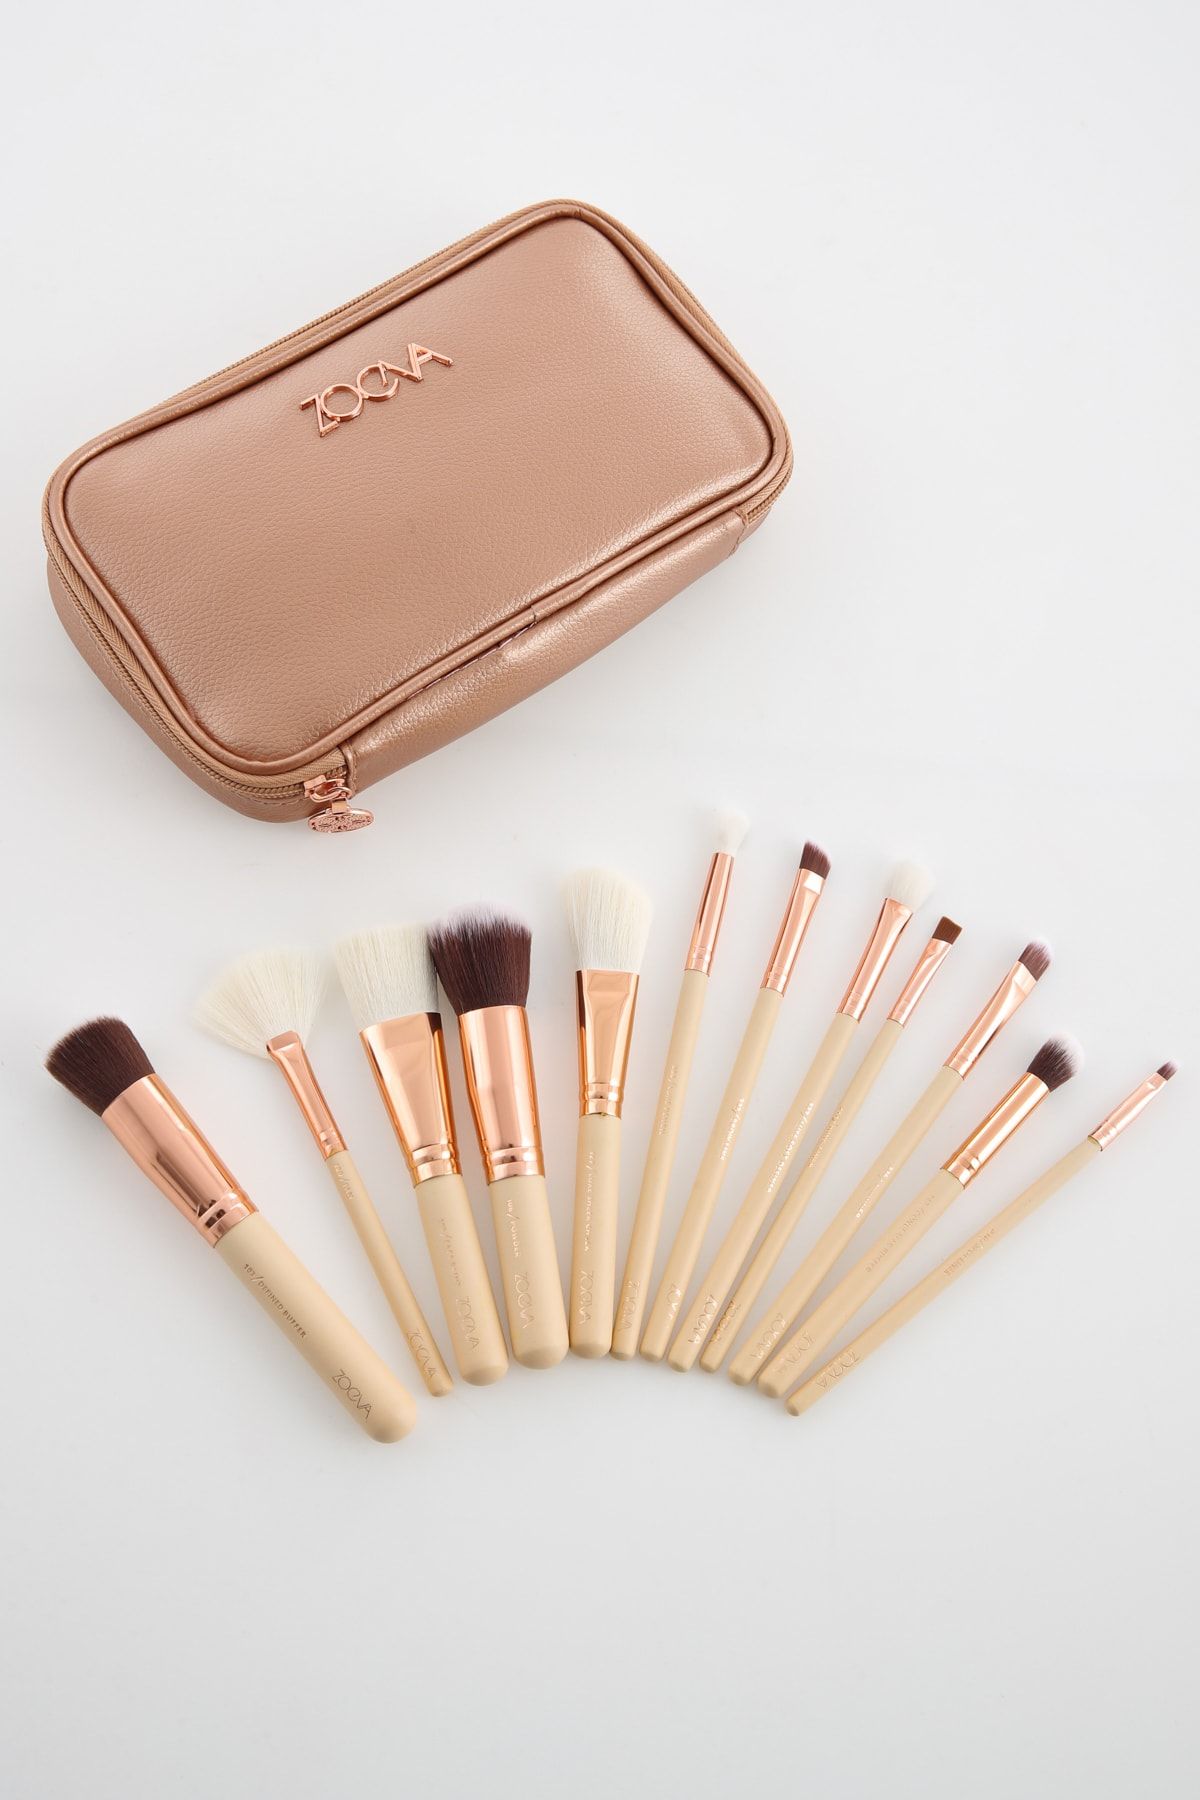 Bh Cosmetics X Zoeva 12 Pcs Brush Set & Bag - 12\'li Fırça Seti & Çanta  Zoeva Rose Gold Fiyatı, Yorumları - Trendyol